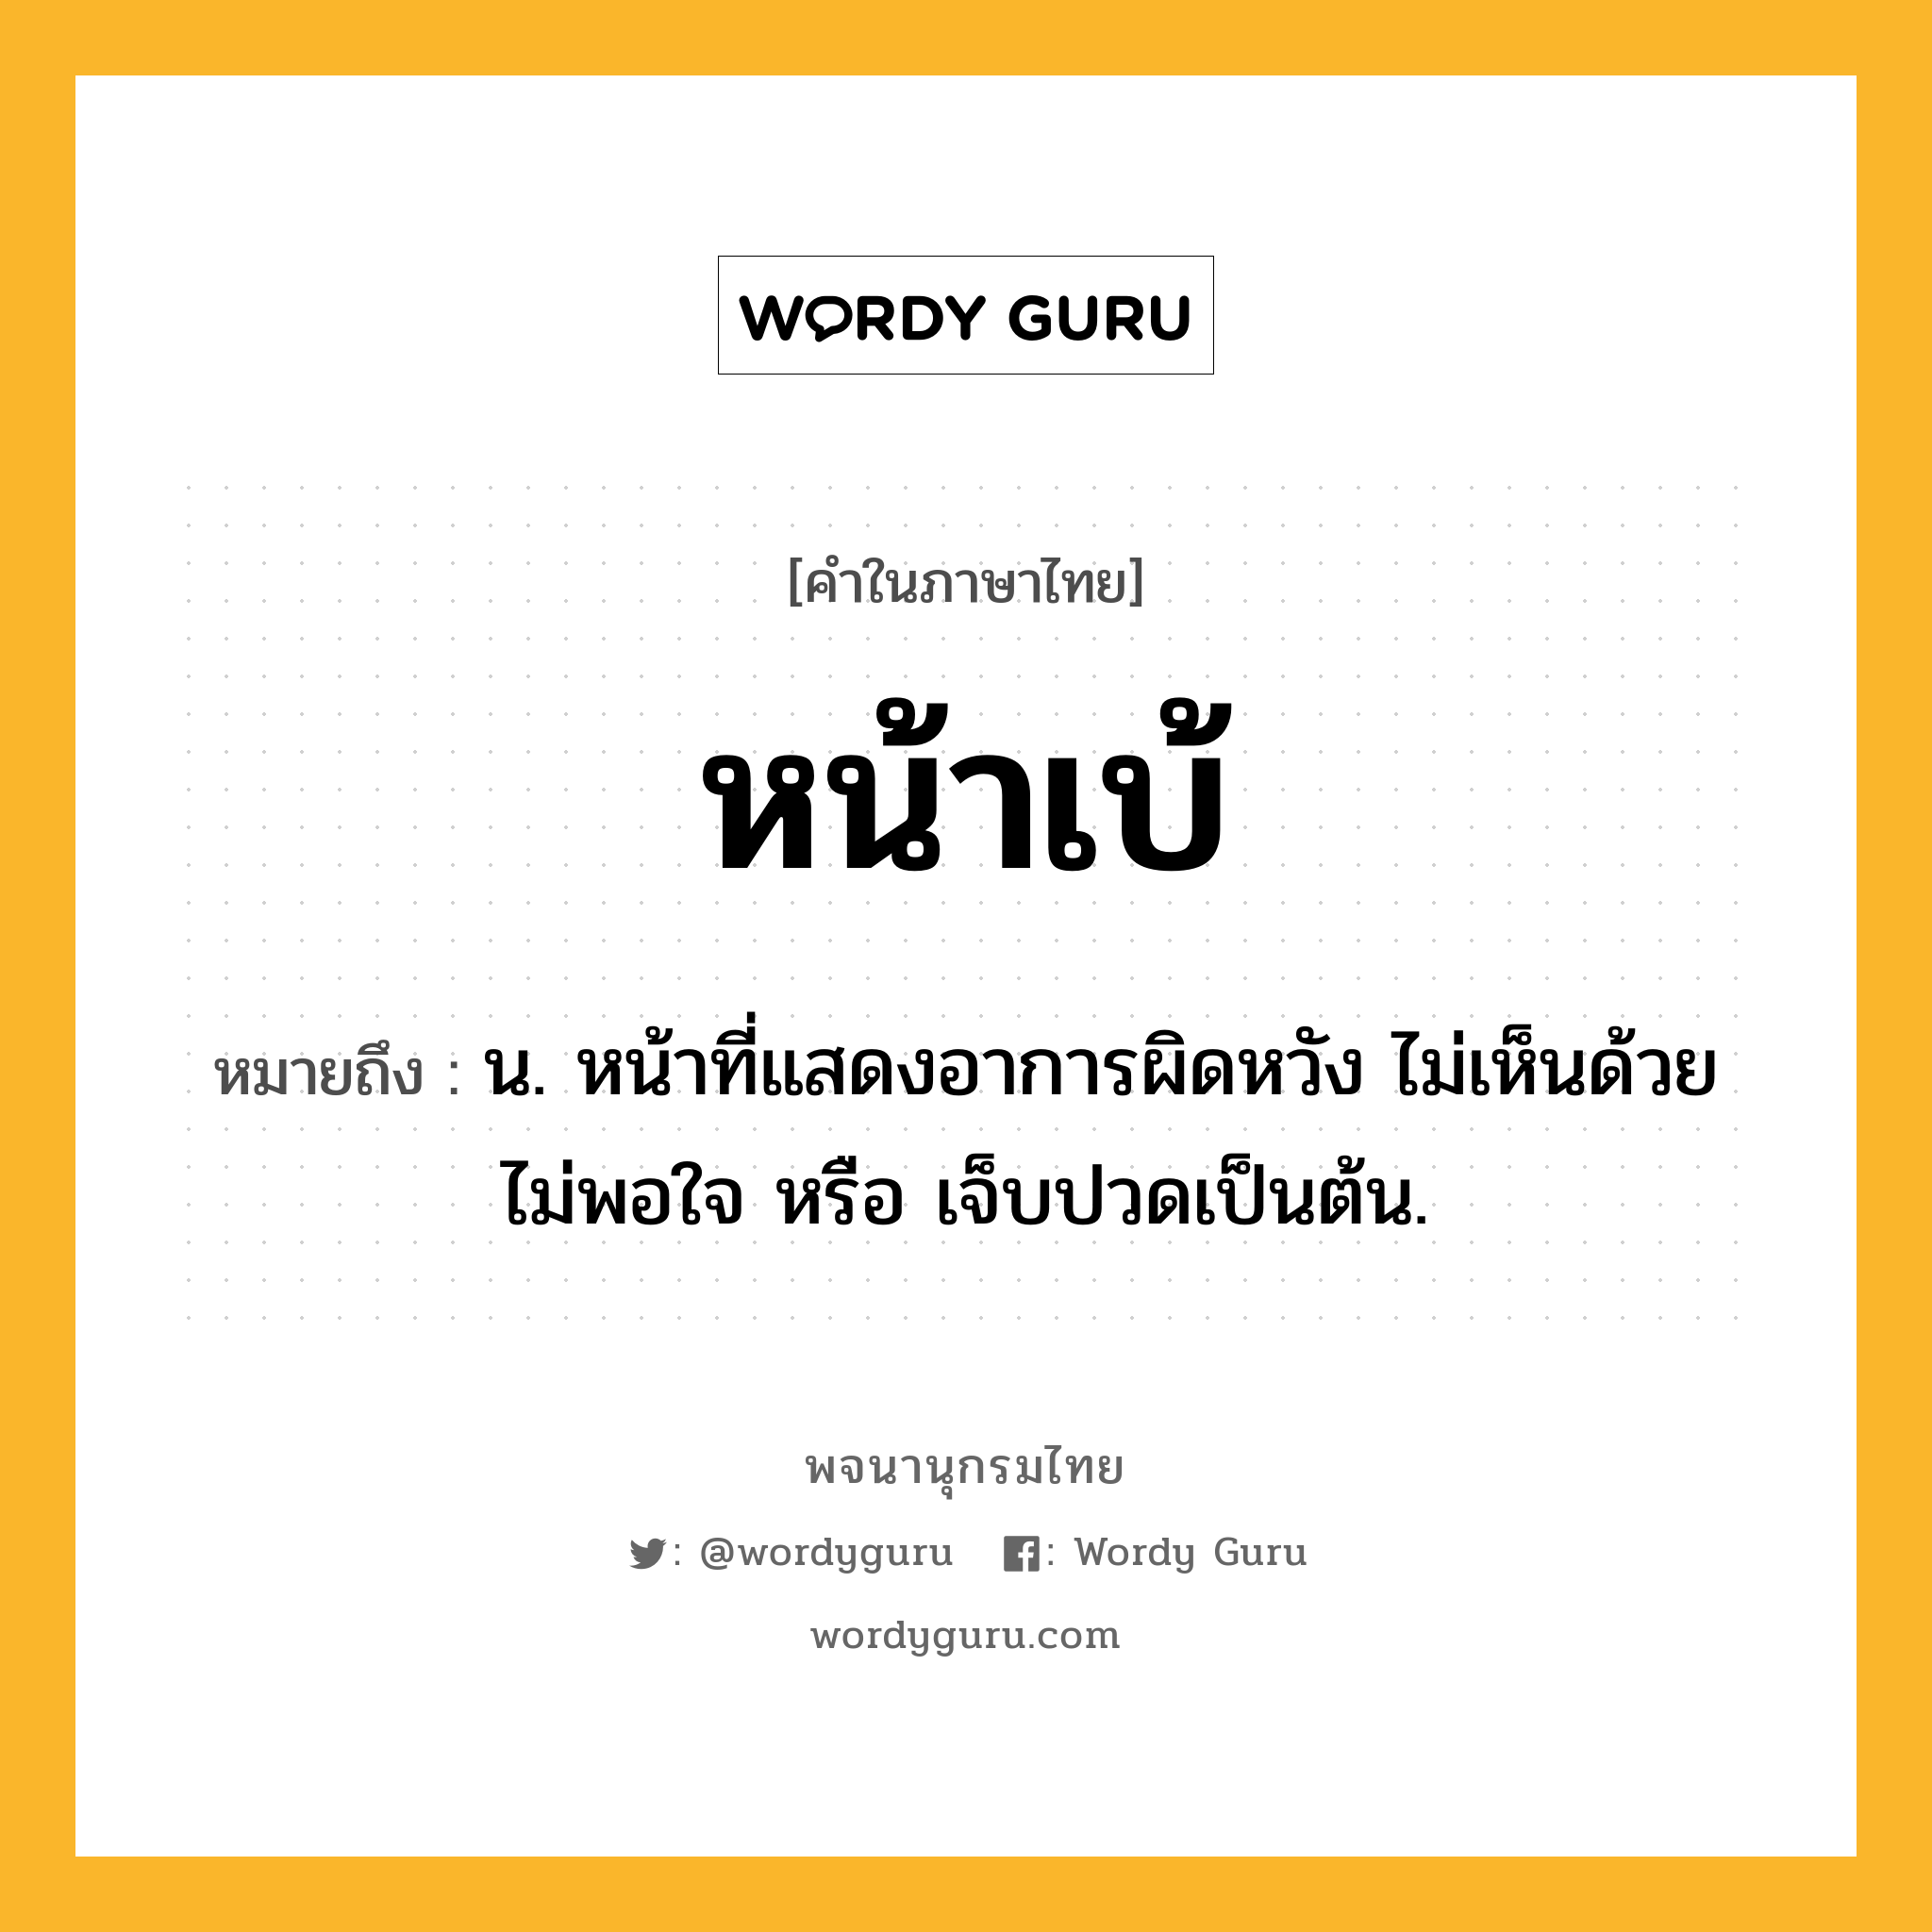 หน้าเบ้ หมายถึงอะไร?, คำในภาษาไทย หน้าเบ้ หมายถึง น. หน้าที่แสดงอาการผิดหวัง ไม่เห็นด้วย ไม่พอใจ หรือ เจ็บปวดเป็นต้น.